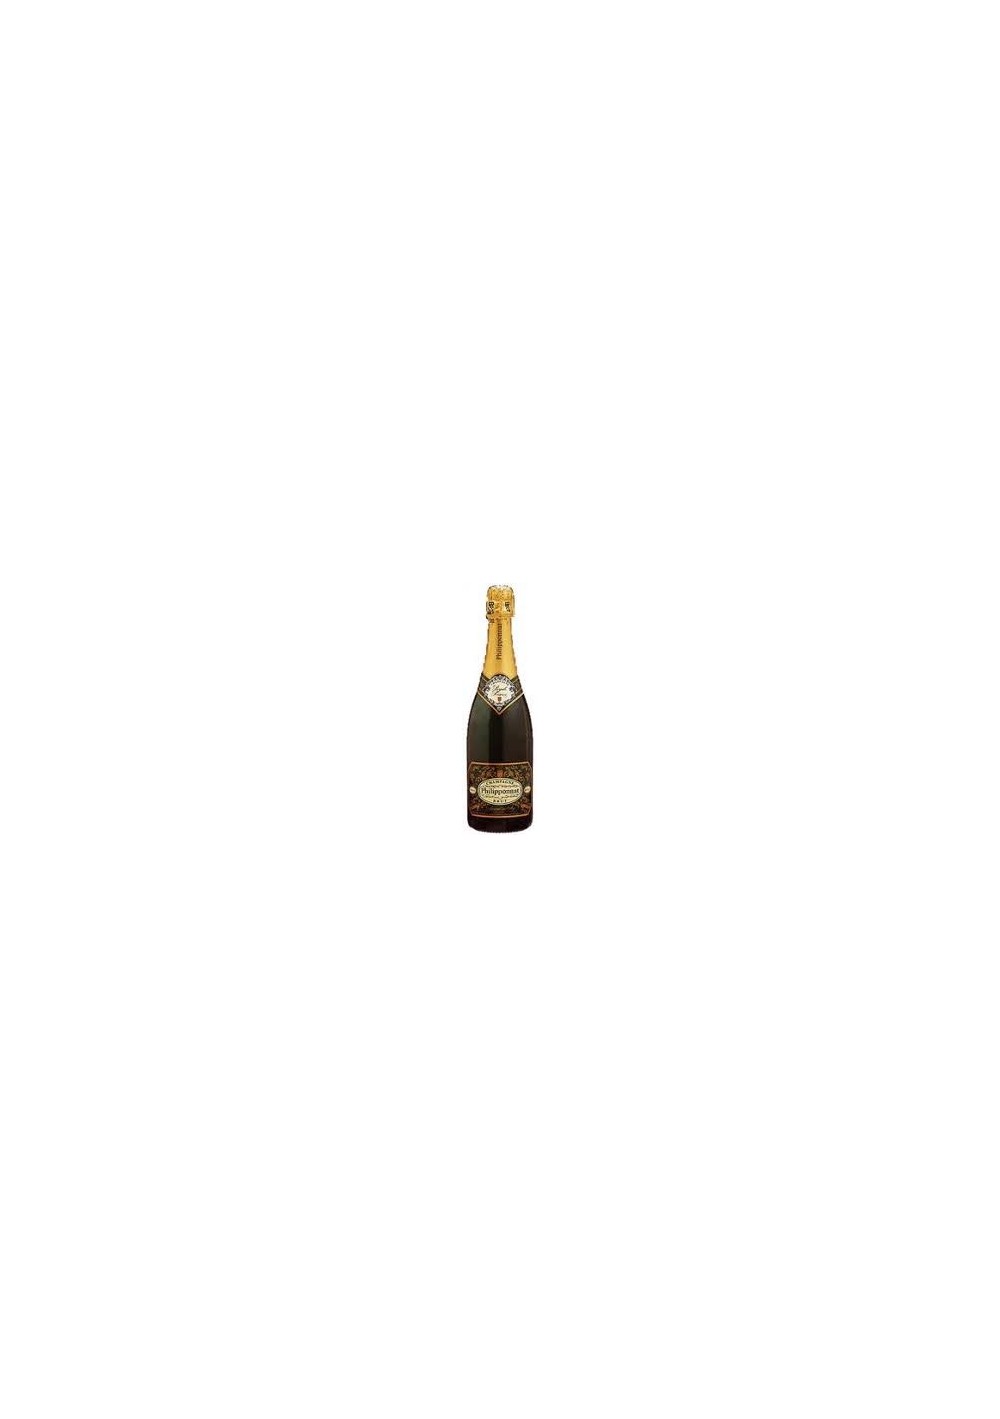 Champagne Phillipponnat - 2012 - Extra Brut Blanc de noirs 